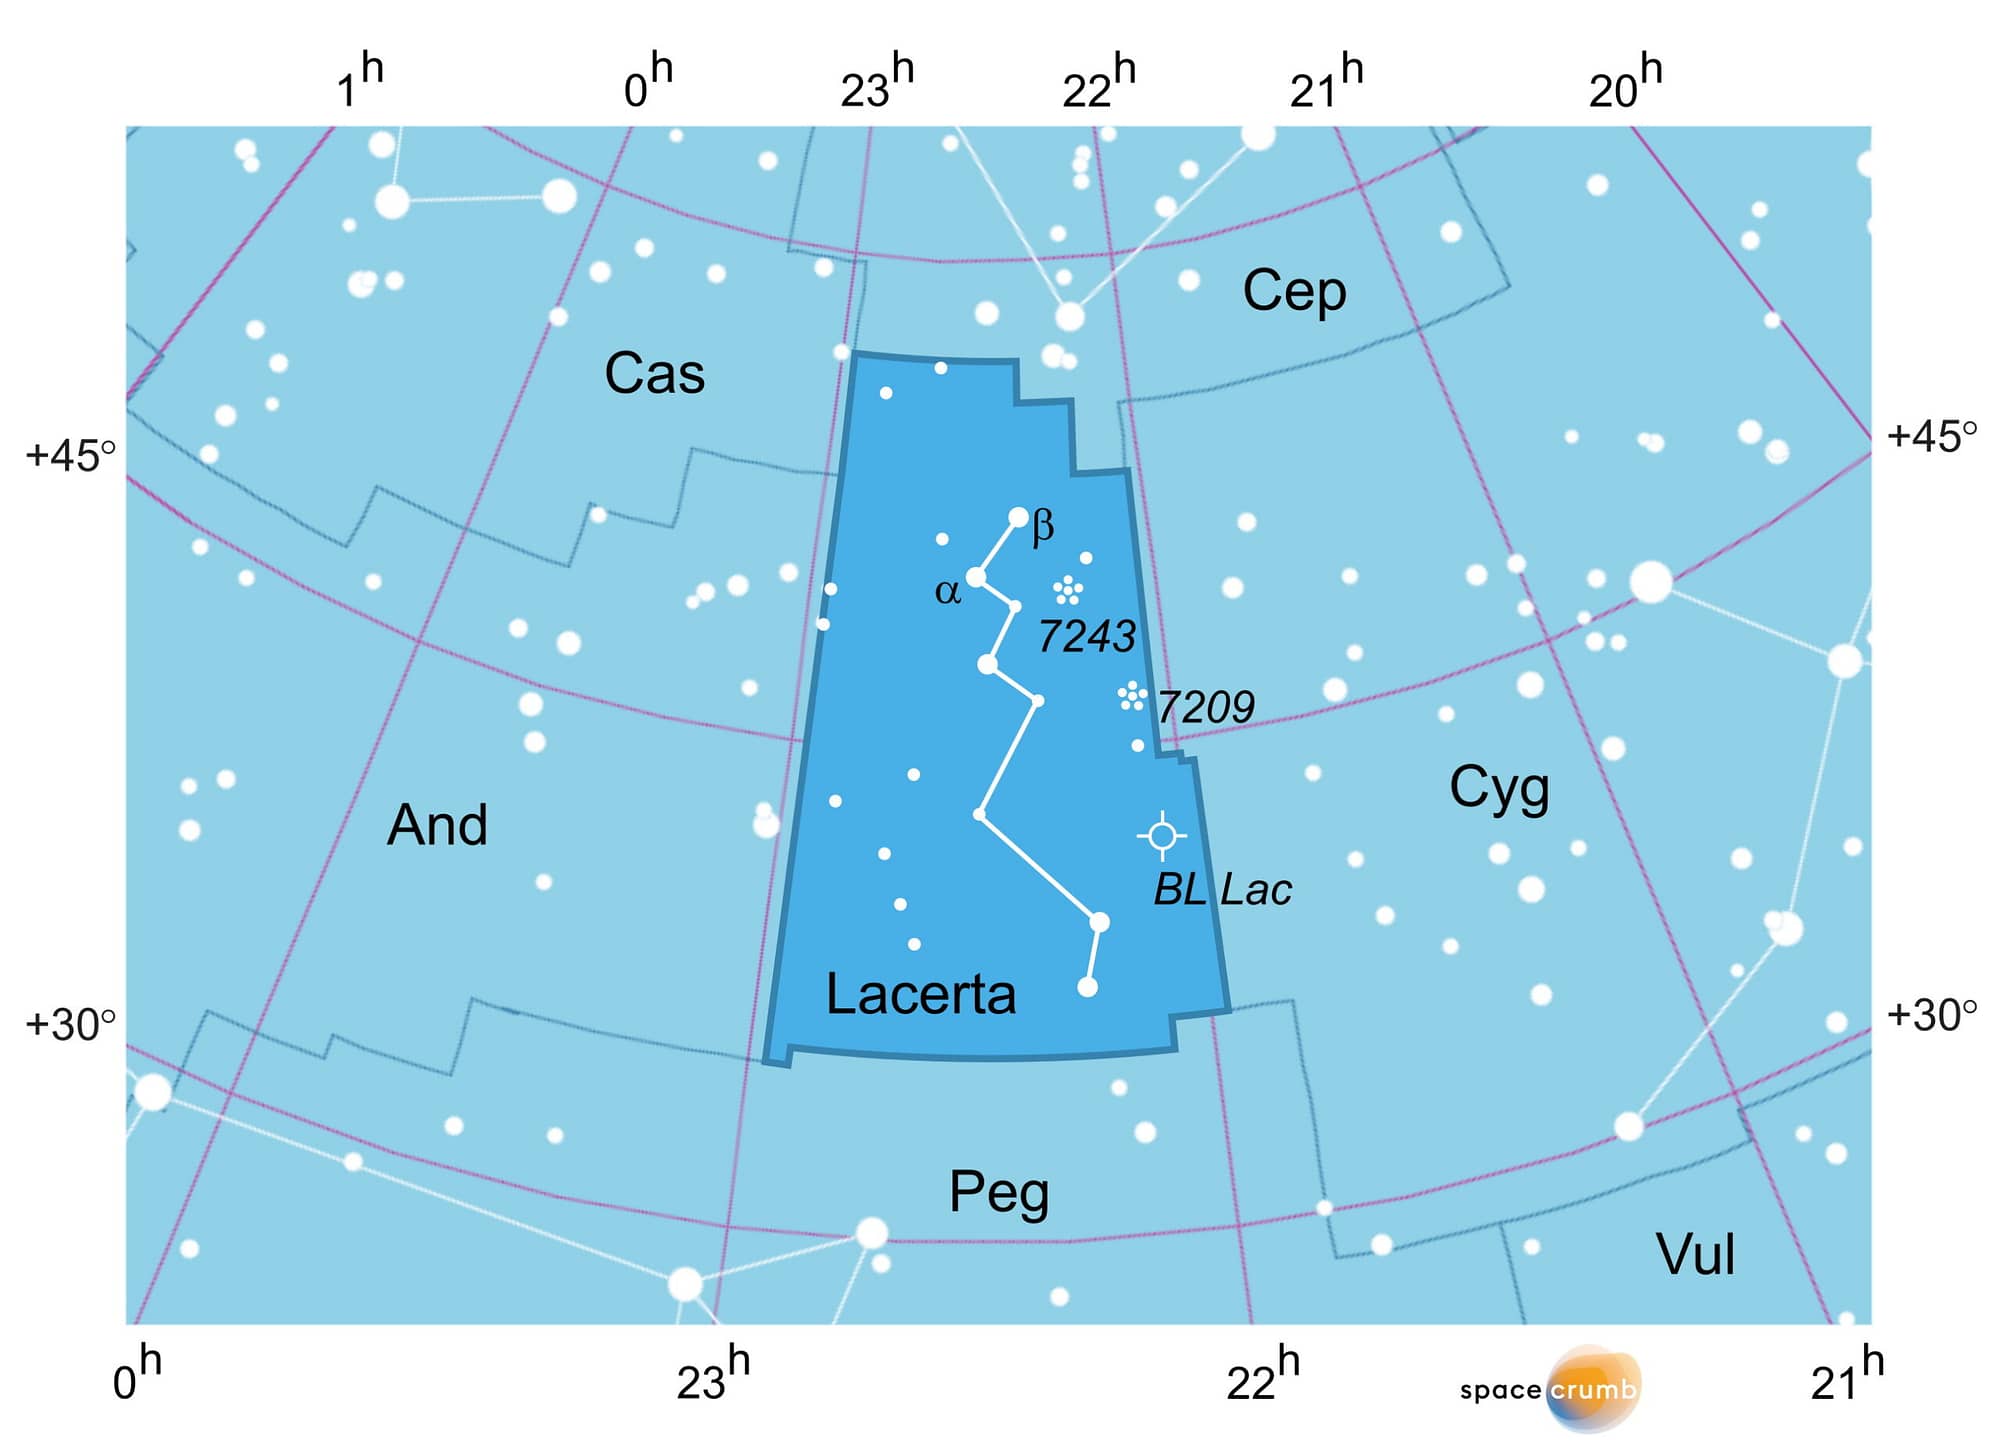 Eine mit Koordinaten versehene grafische Karte eines Himmelsausschnitts zeigt weiße Sterne auf hellblauem Hintergrund. Die Fläche, die das Sternbild Eidechse in der Bildmitte einnimmt, ist dunkelblau hervorgehoben.